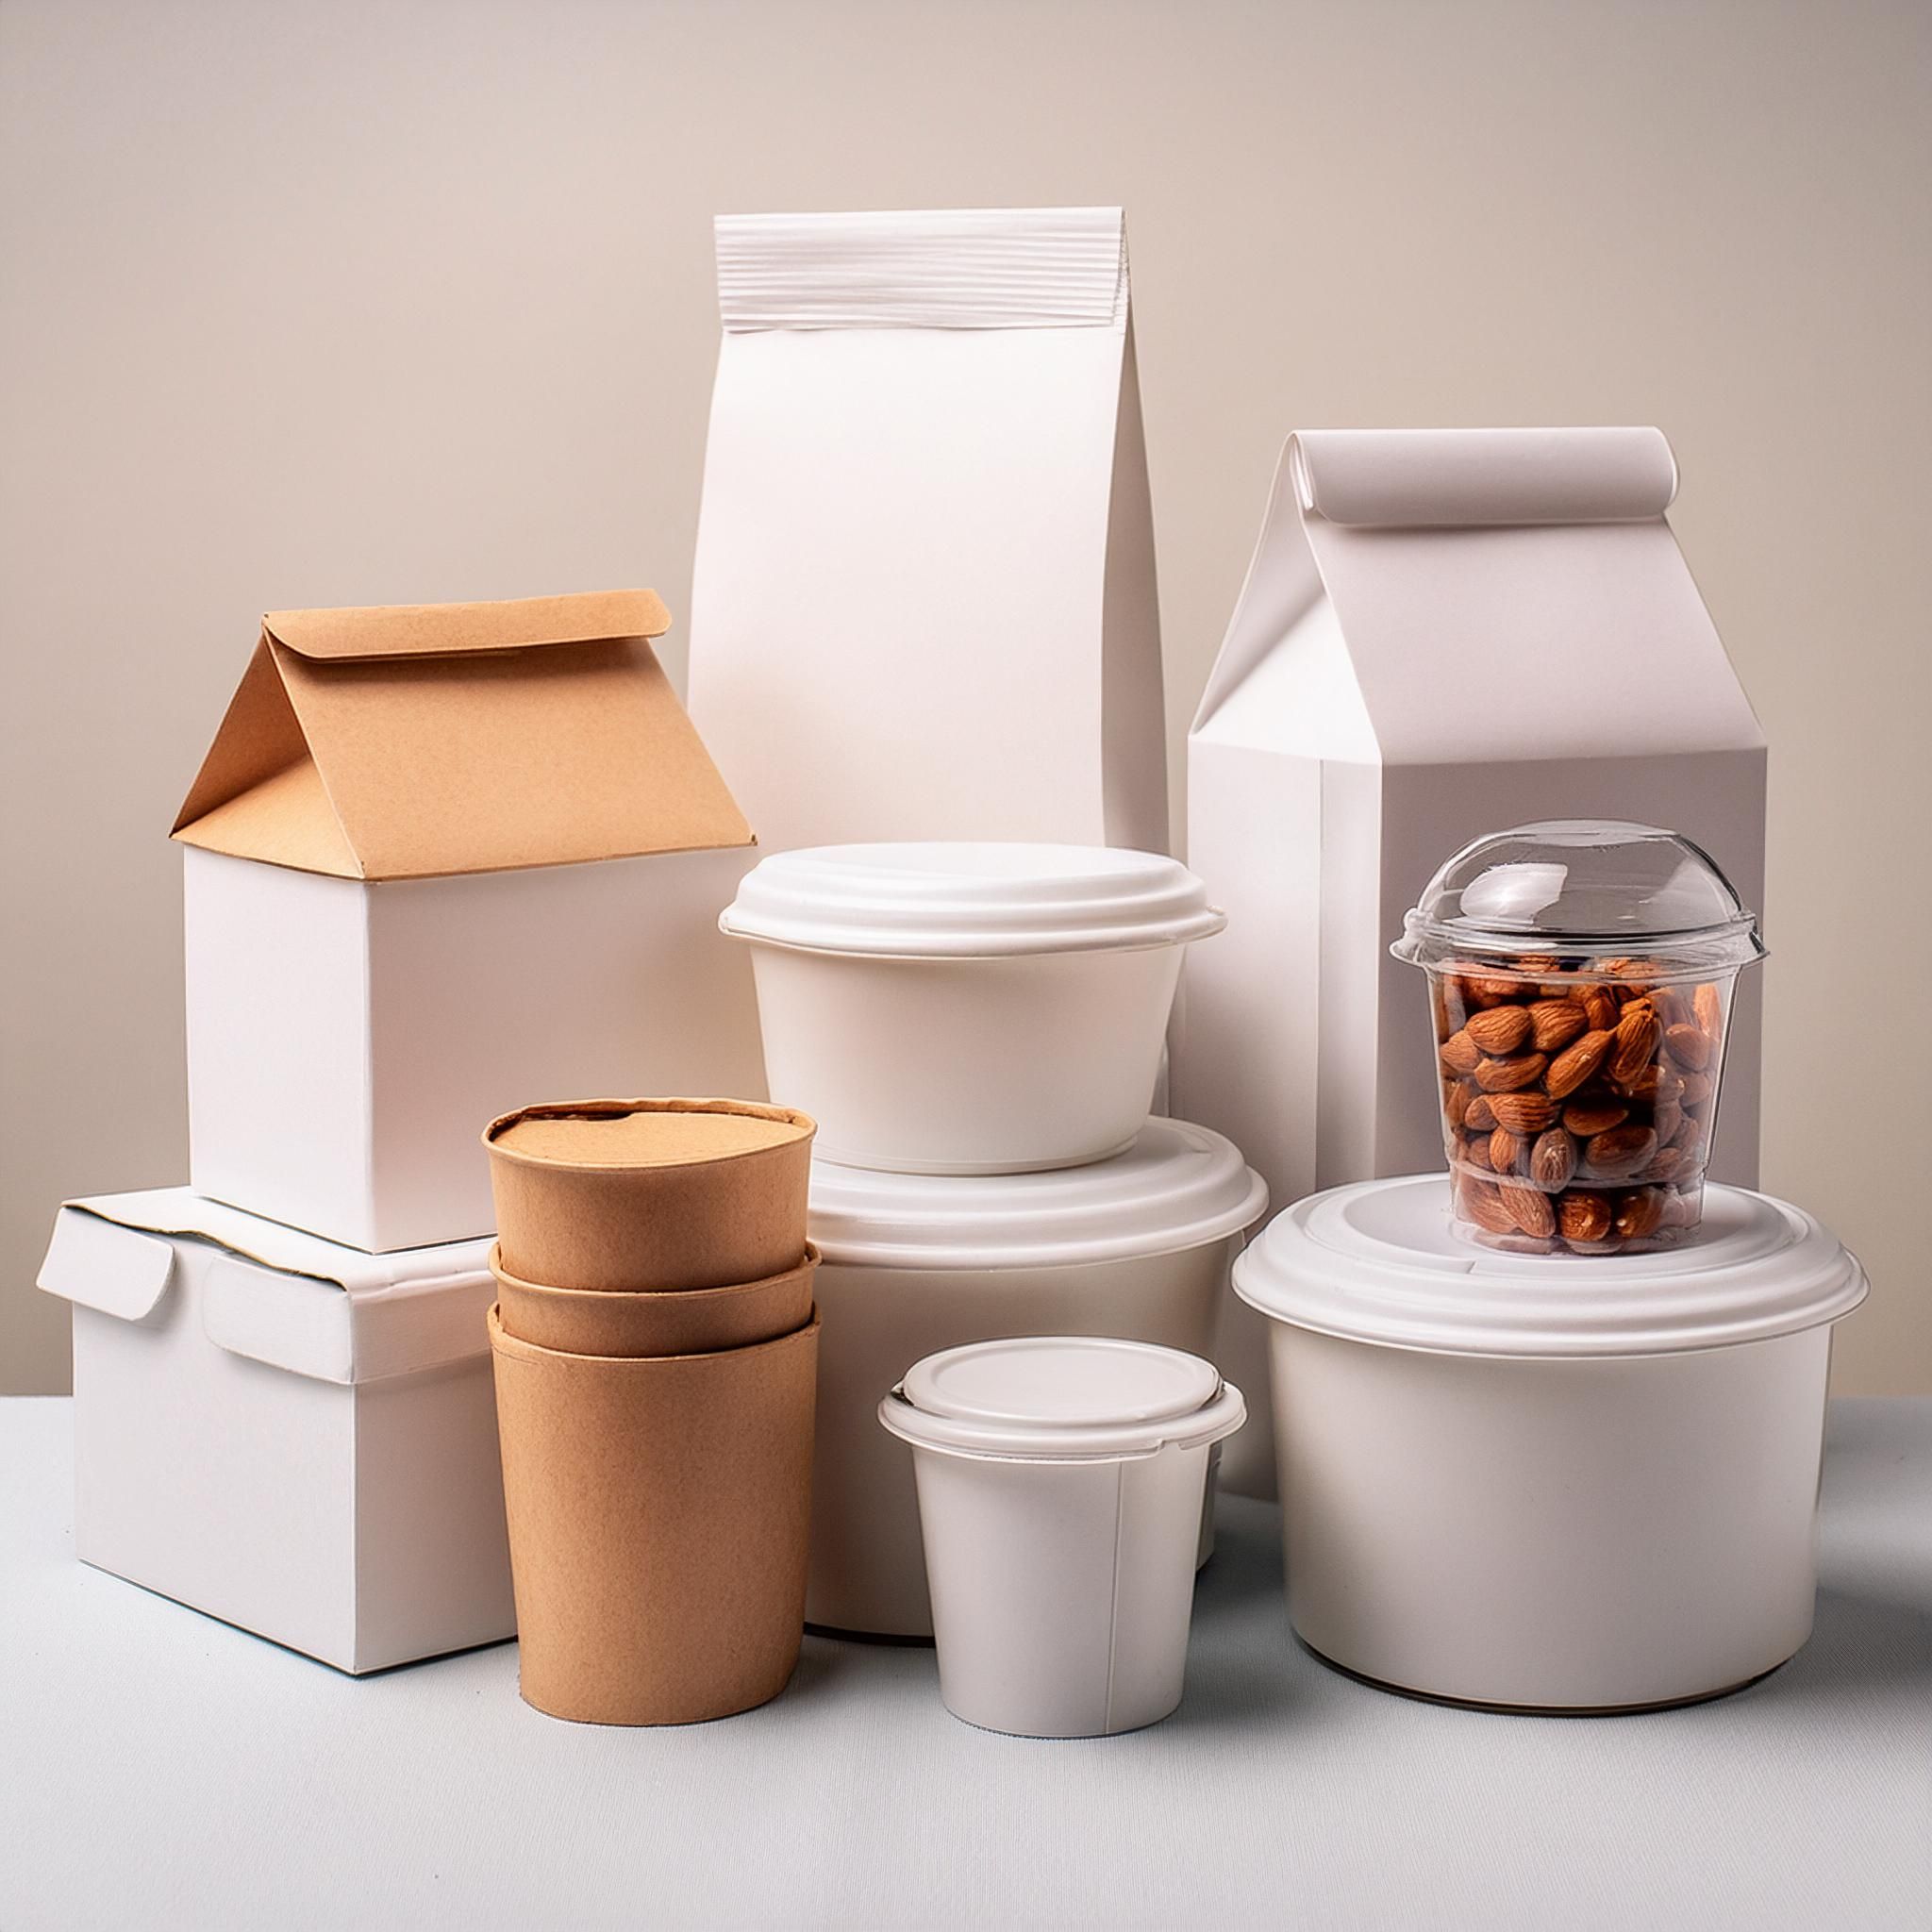 Eine Auswahl an Lebensmittelverpackungen in weiß ohne Logos, Hintergrund weiß. Erstellt mit Adobe Firefly.